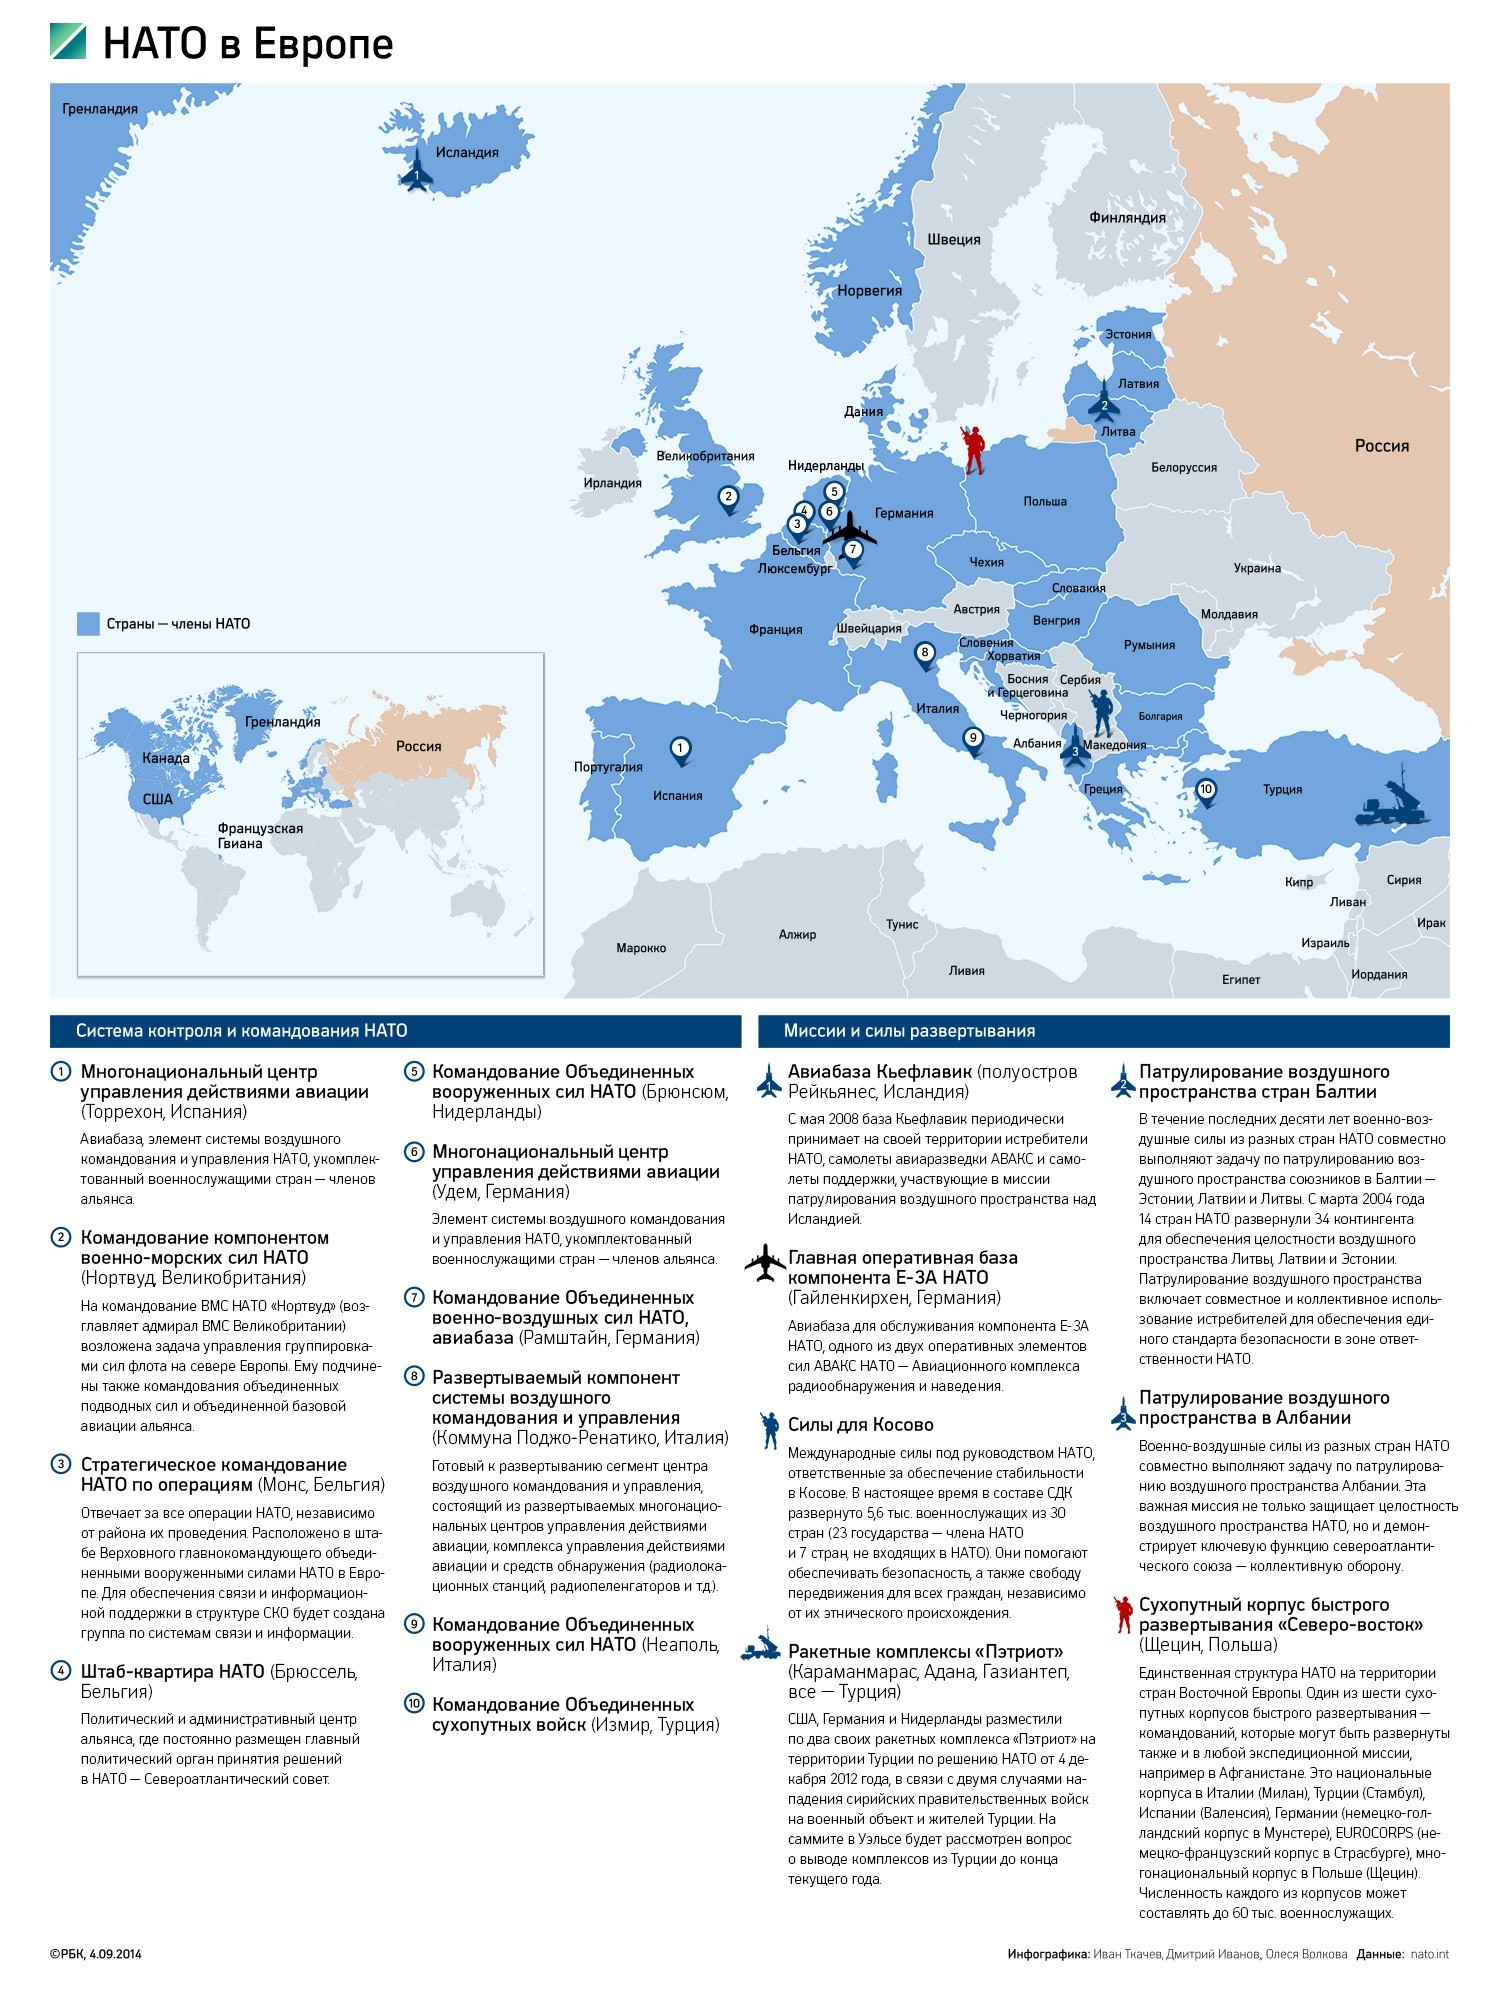 Европа под крышей НАТО: карта всех баз альянса. Инфографика